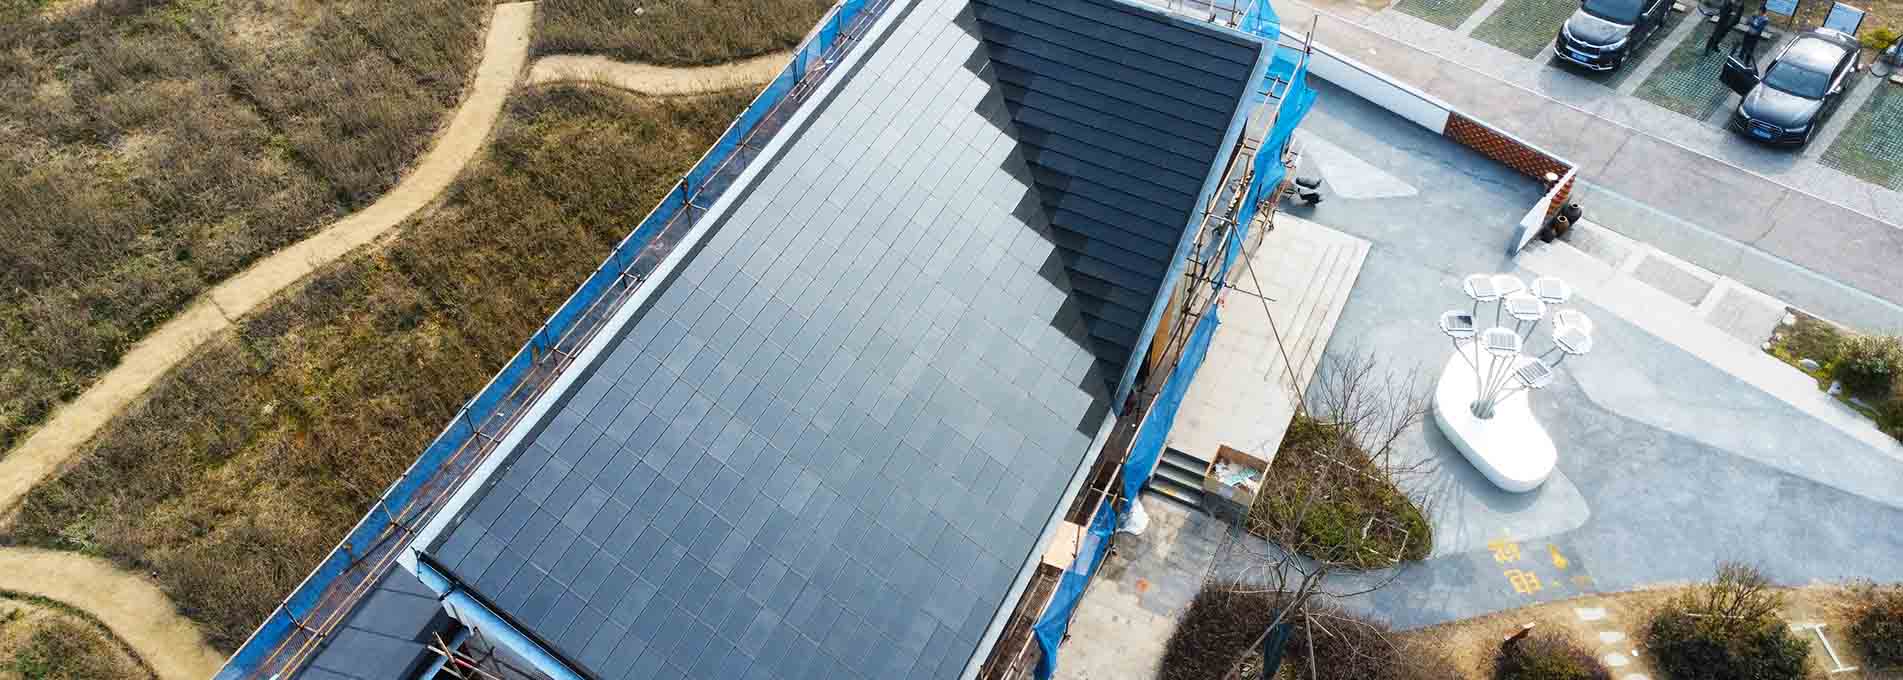 Dachziegel mit Solarpanel